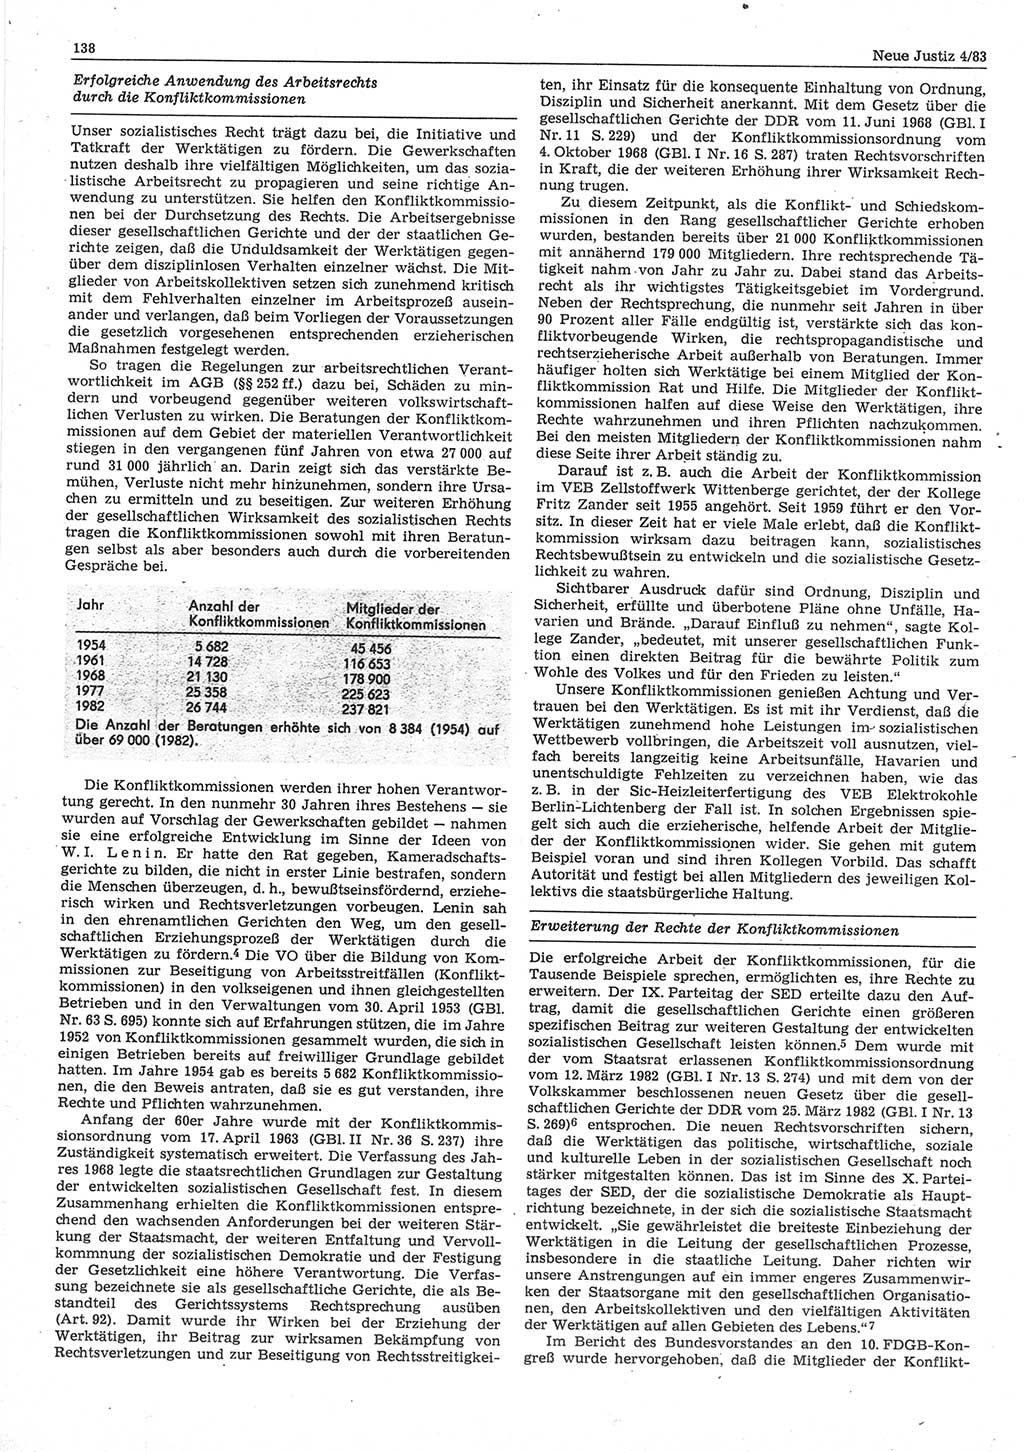 Neue Justiz (NJ), Zeitschrift für sozialistisches Recht und Gesetzlichkeit [Deutsche Demokratische Republik (DDR)], 37. Jahrgang 1983, Seite 138 (NJ DDR 1983, S. 138)